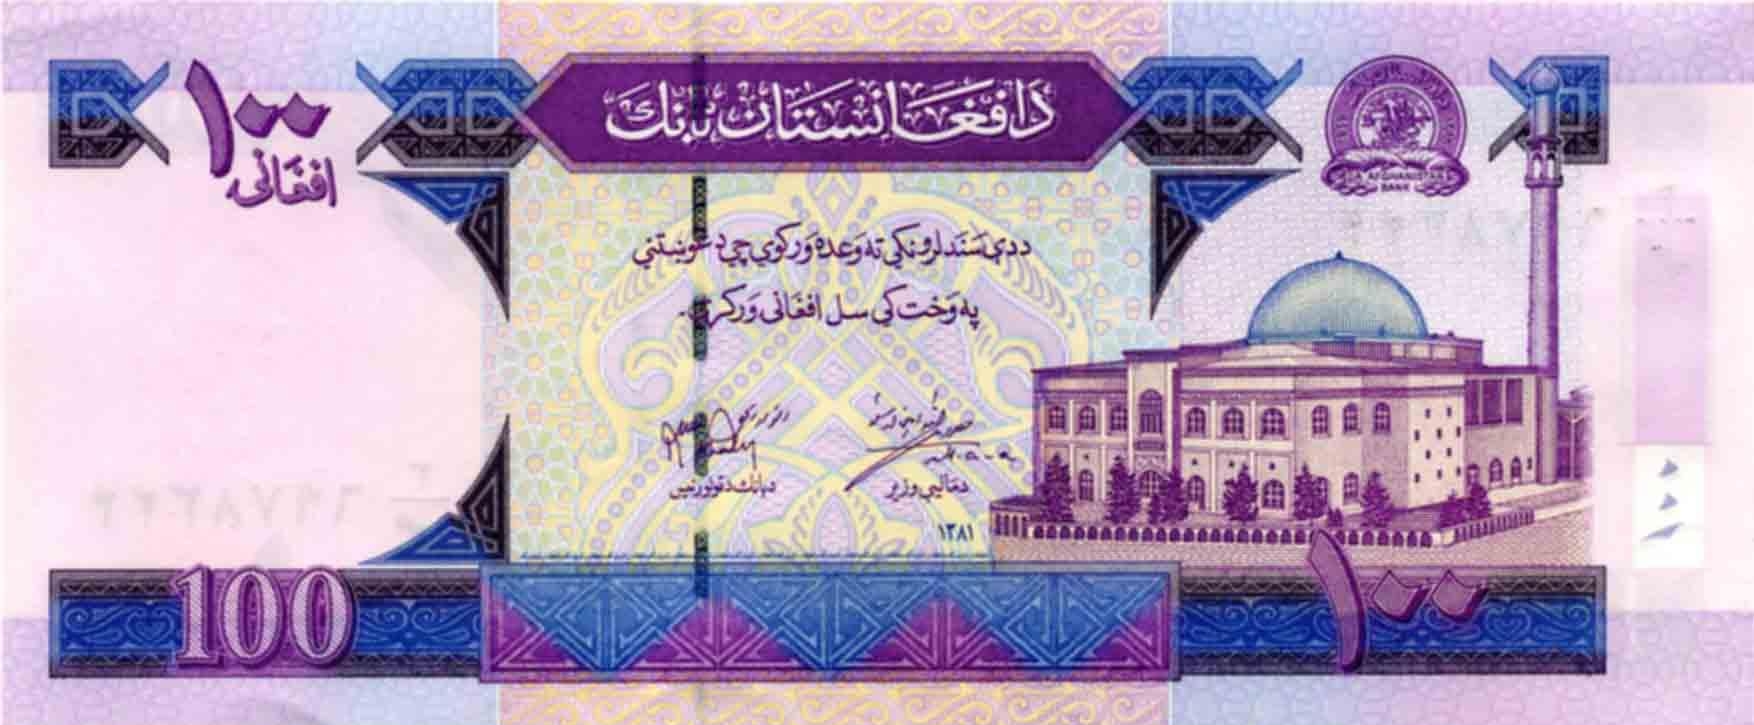 Афгани - национальная валюта Афганистана